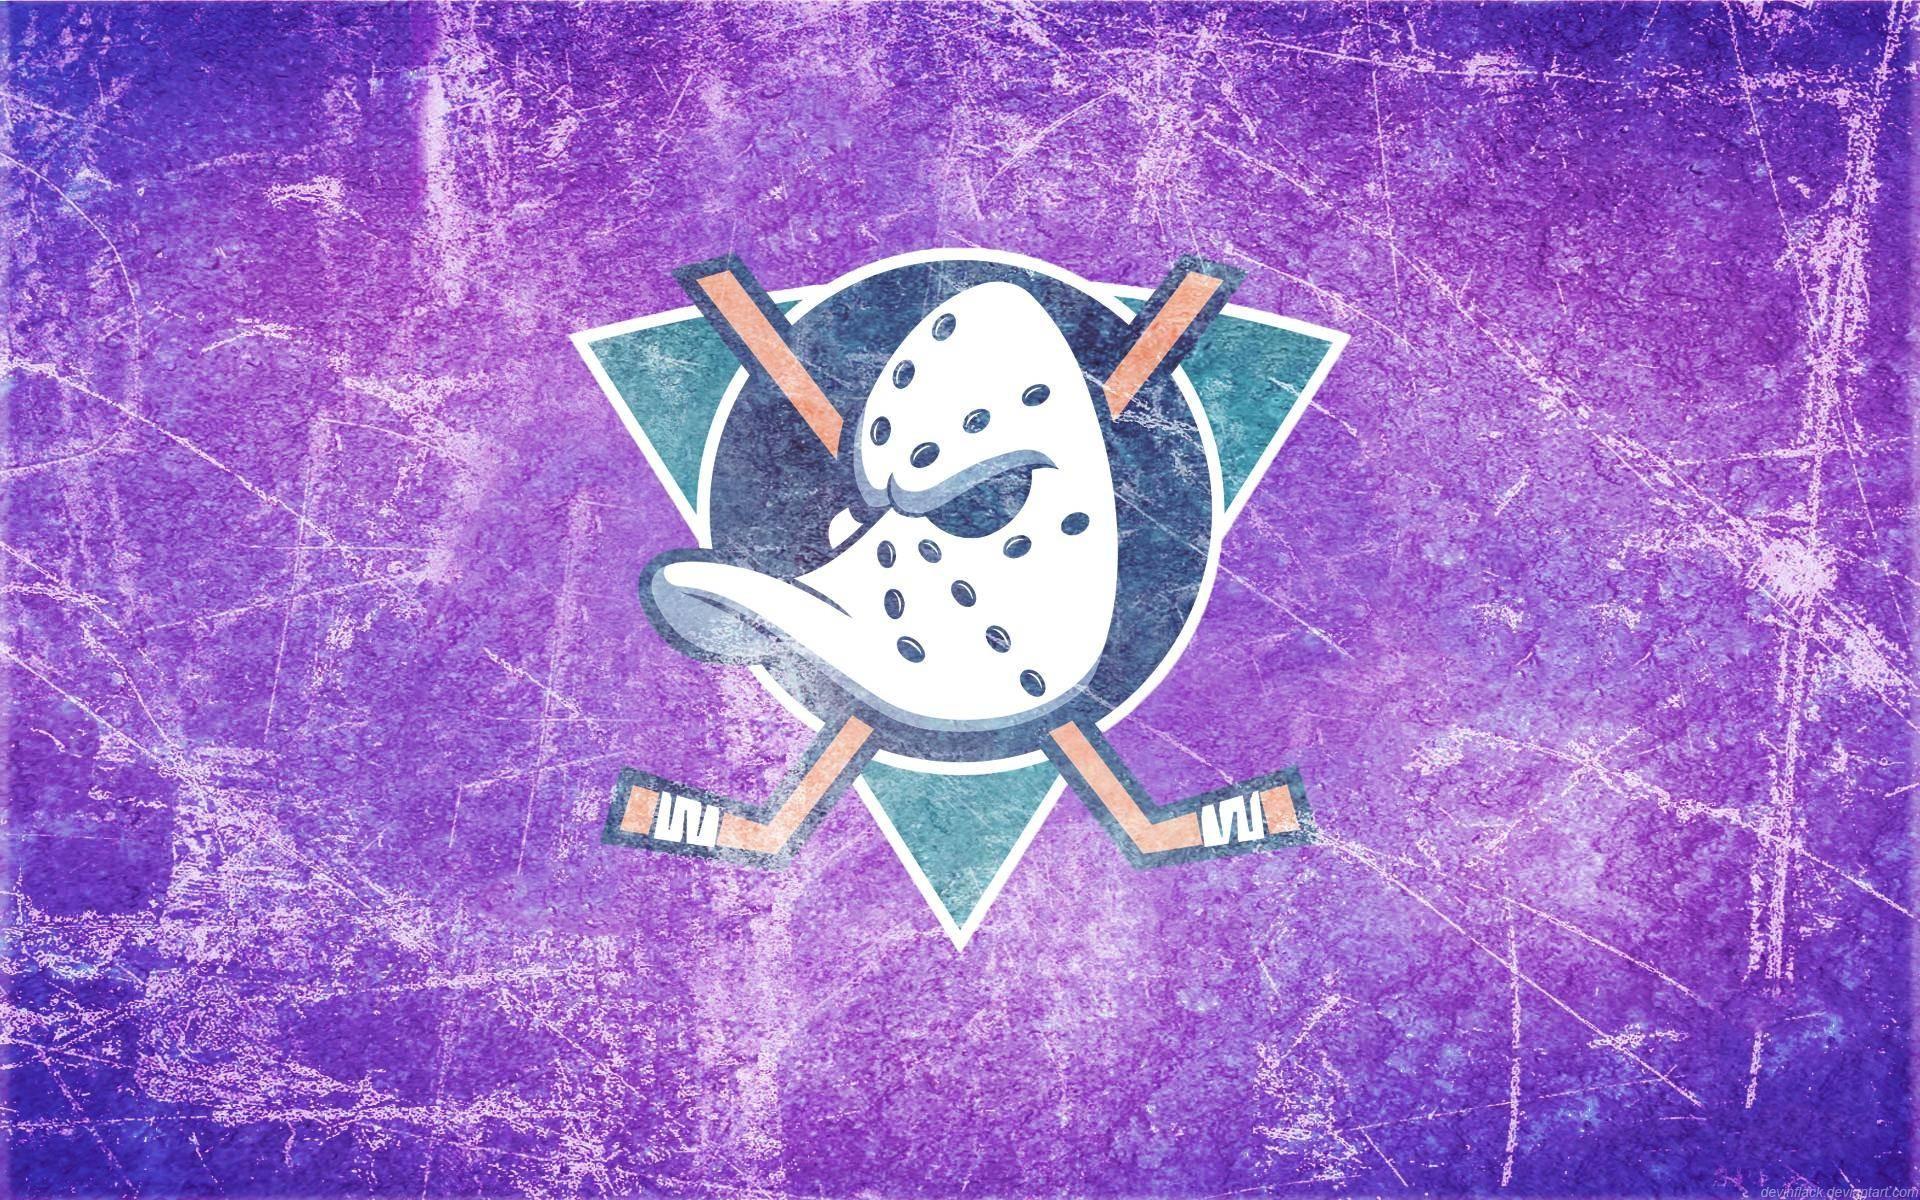 Anaheim Ducks Wallpaper background picture